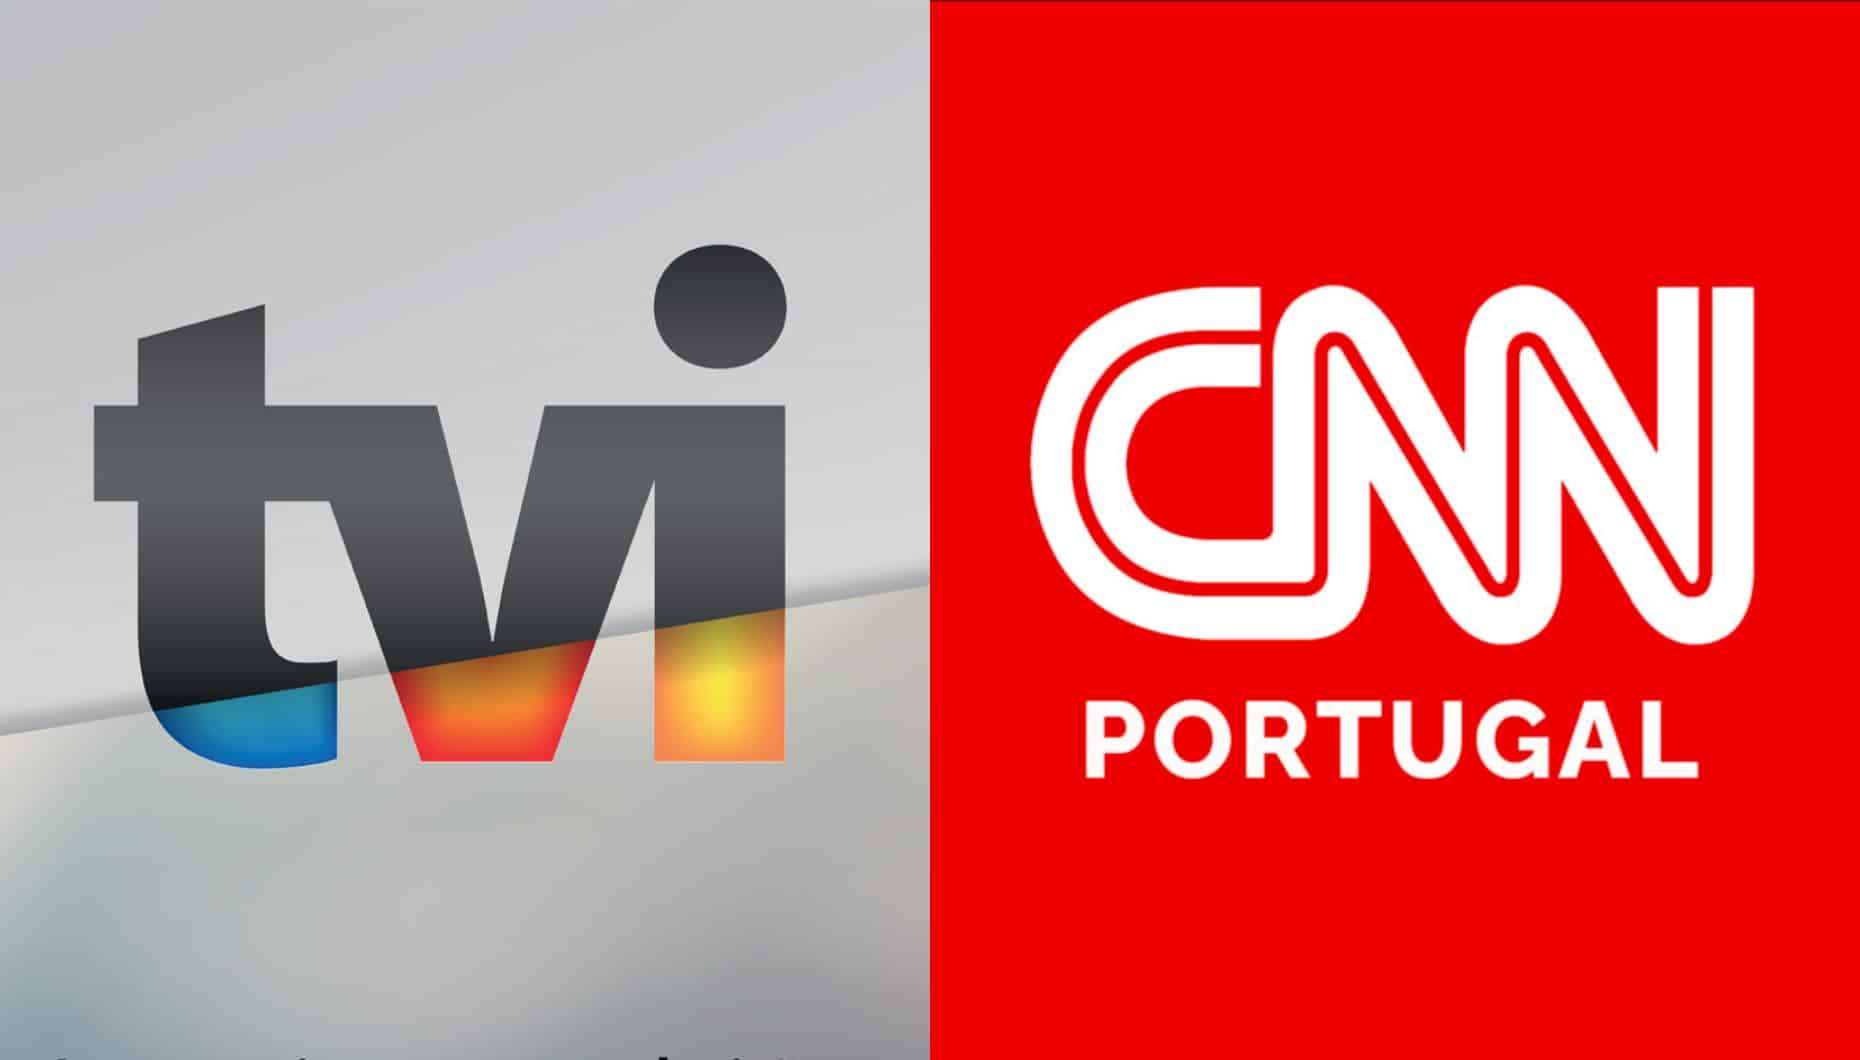 cnn portugal e tvi juntas: “acompanhe em direto…”